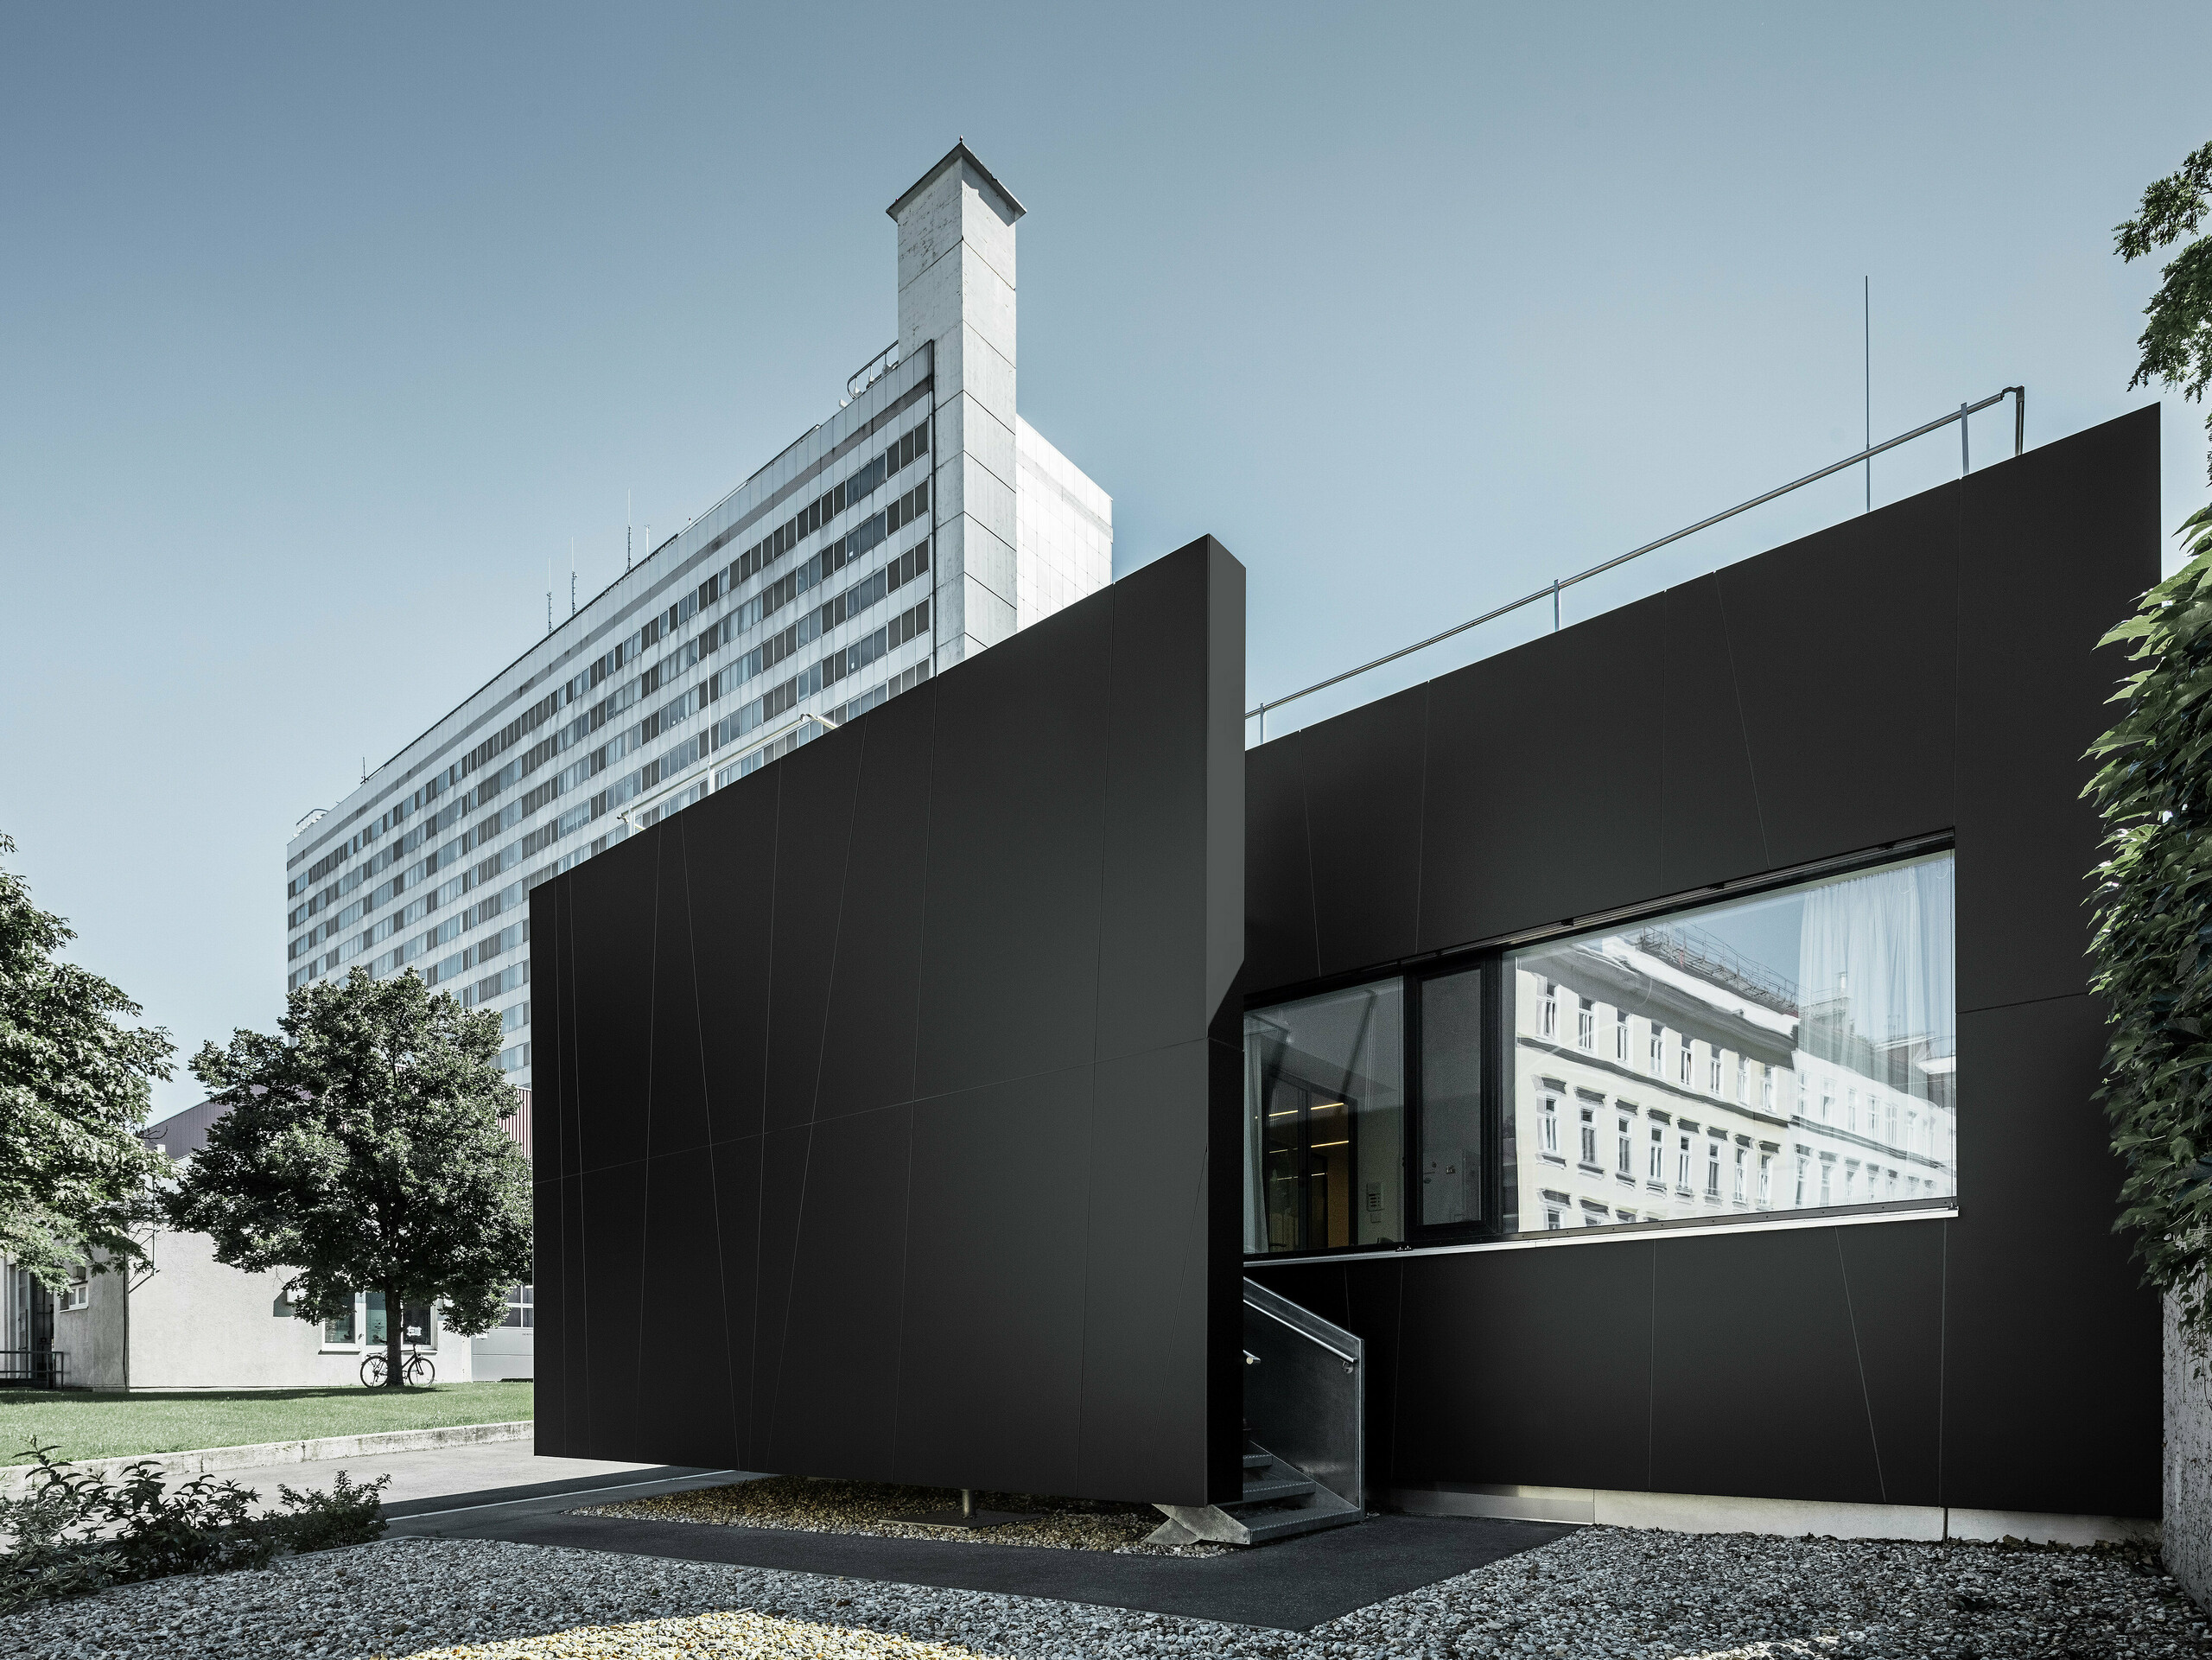 Frontalansicht der zentralen Notaufnahme der Klinik Landstraße in der Juchsgasse in Wien wurde mit PREFABOND Aluminium Verbundplatten in der Farbe schwarzgrau verkleidet.